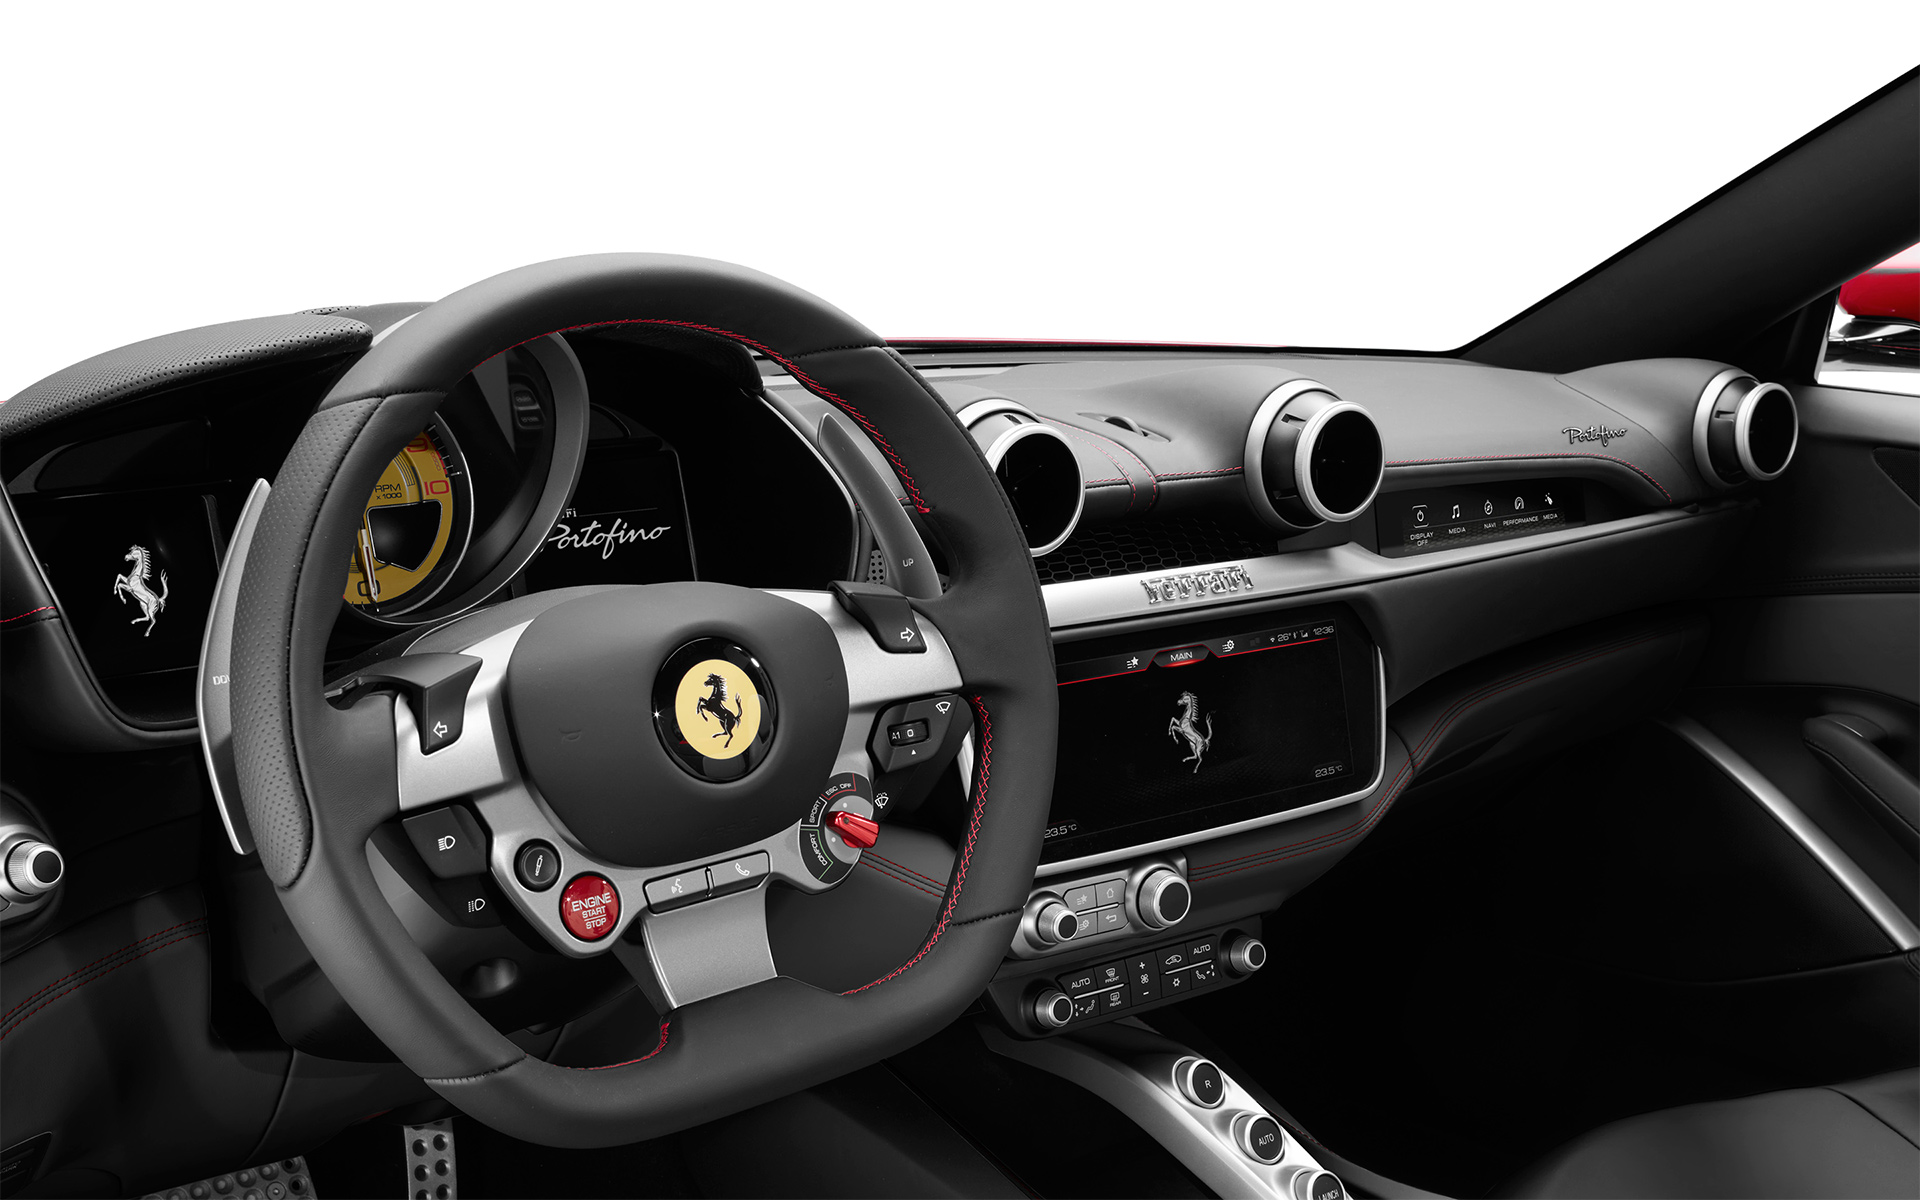 A Look Inside the Ferrari Portofino